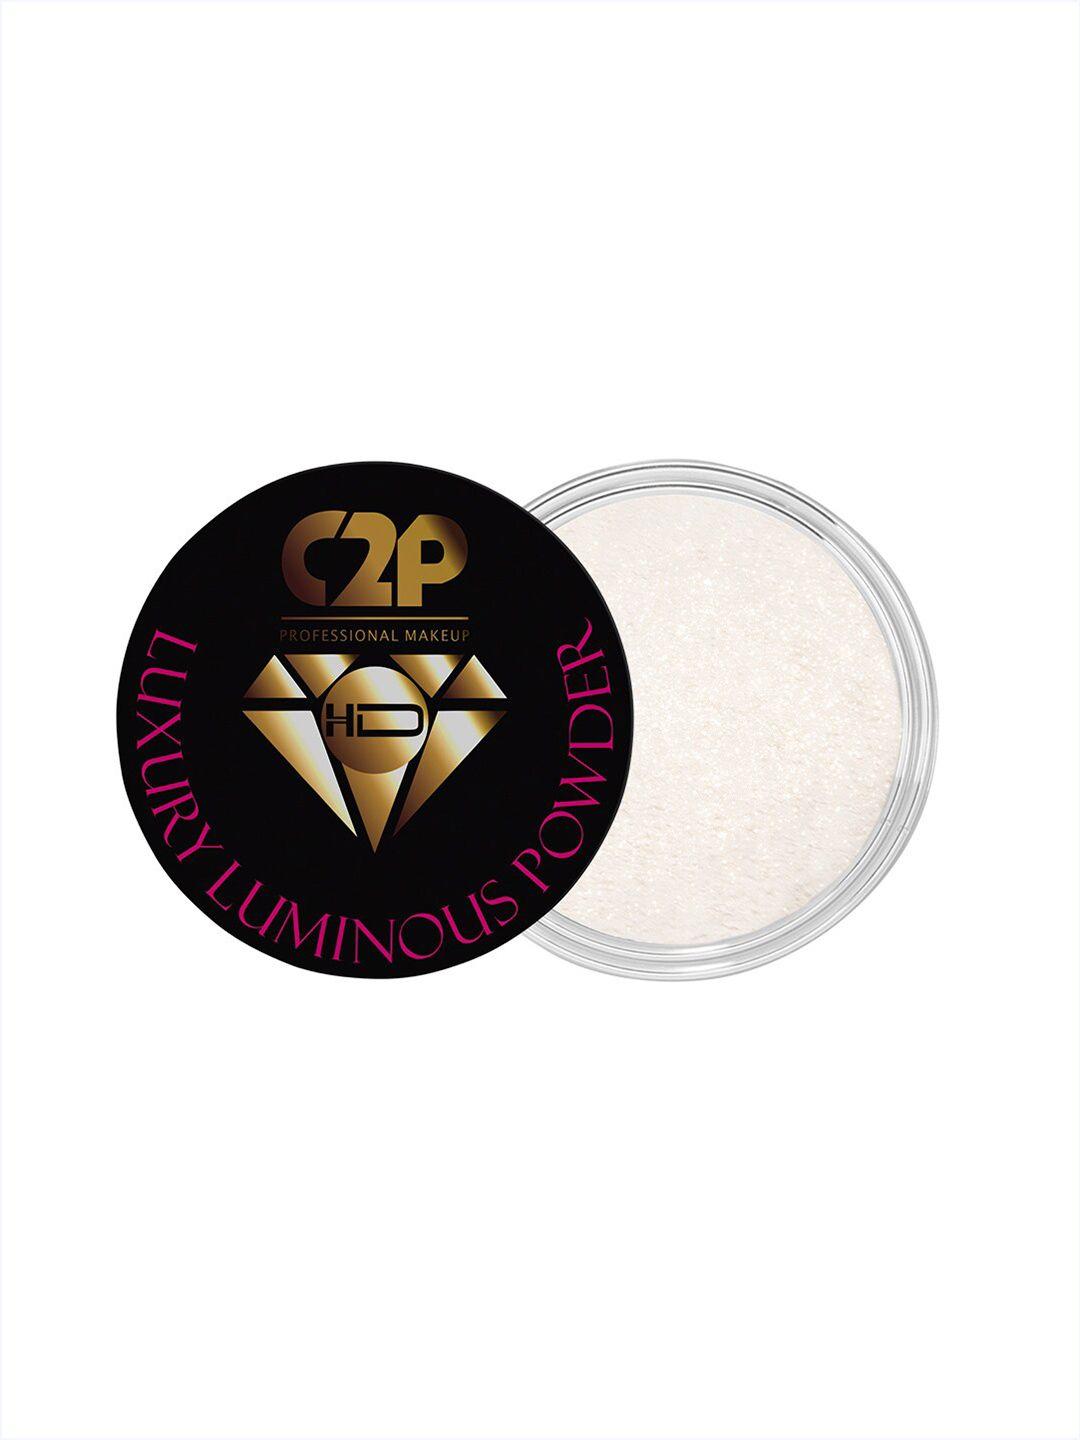 c2p professional makeup hd luxury luminous shimmer powder - fairest 03